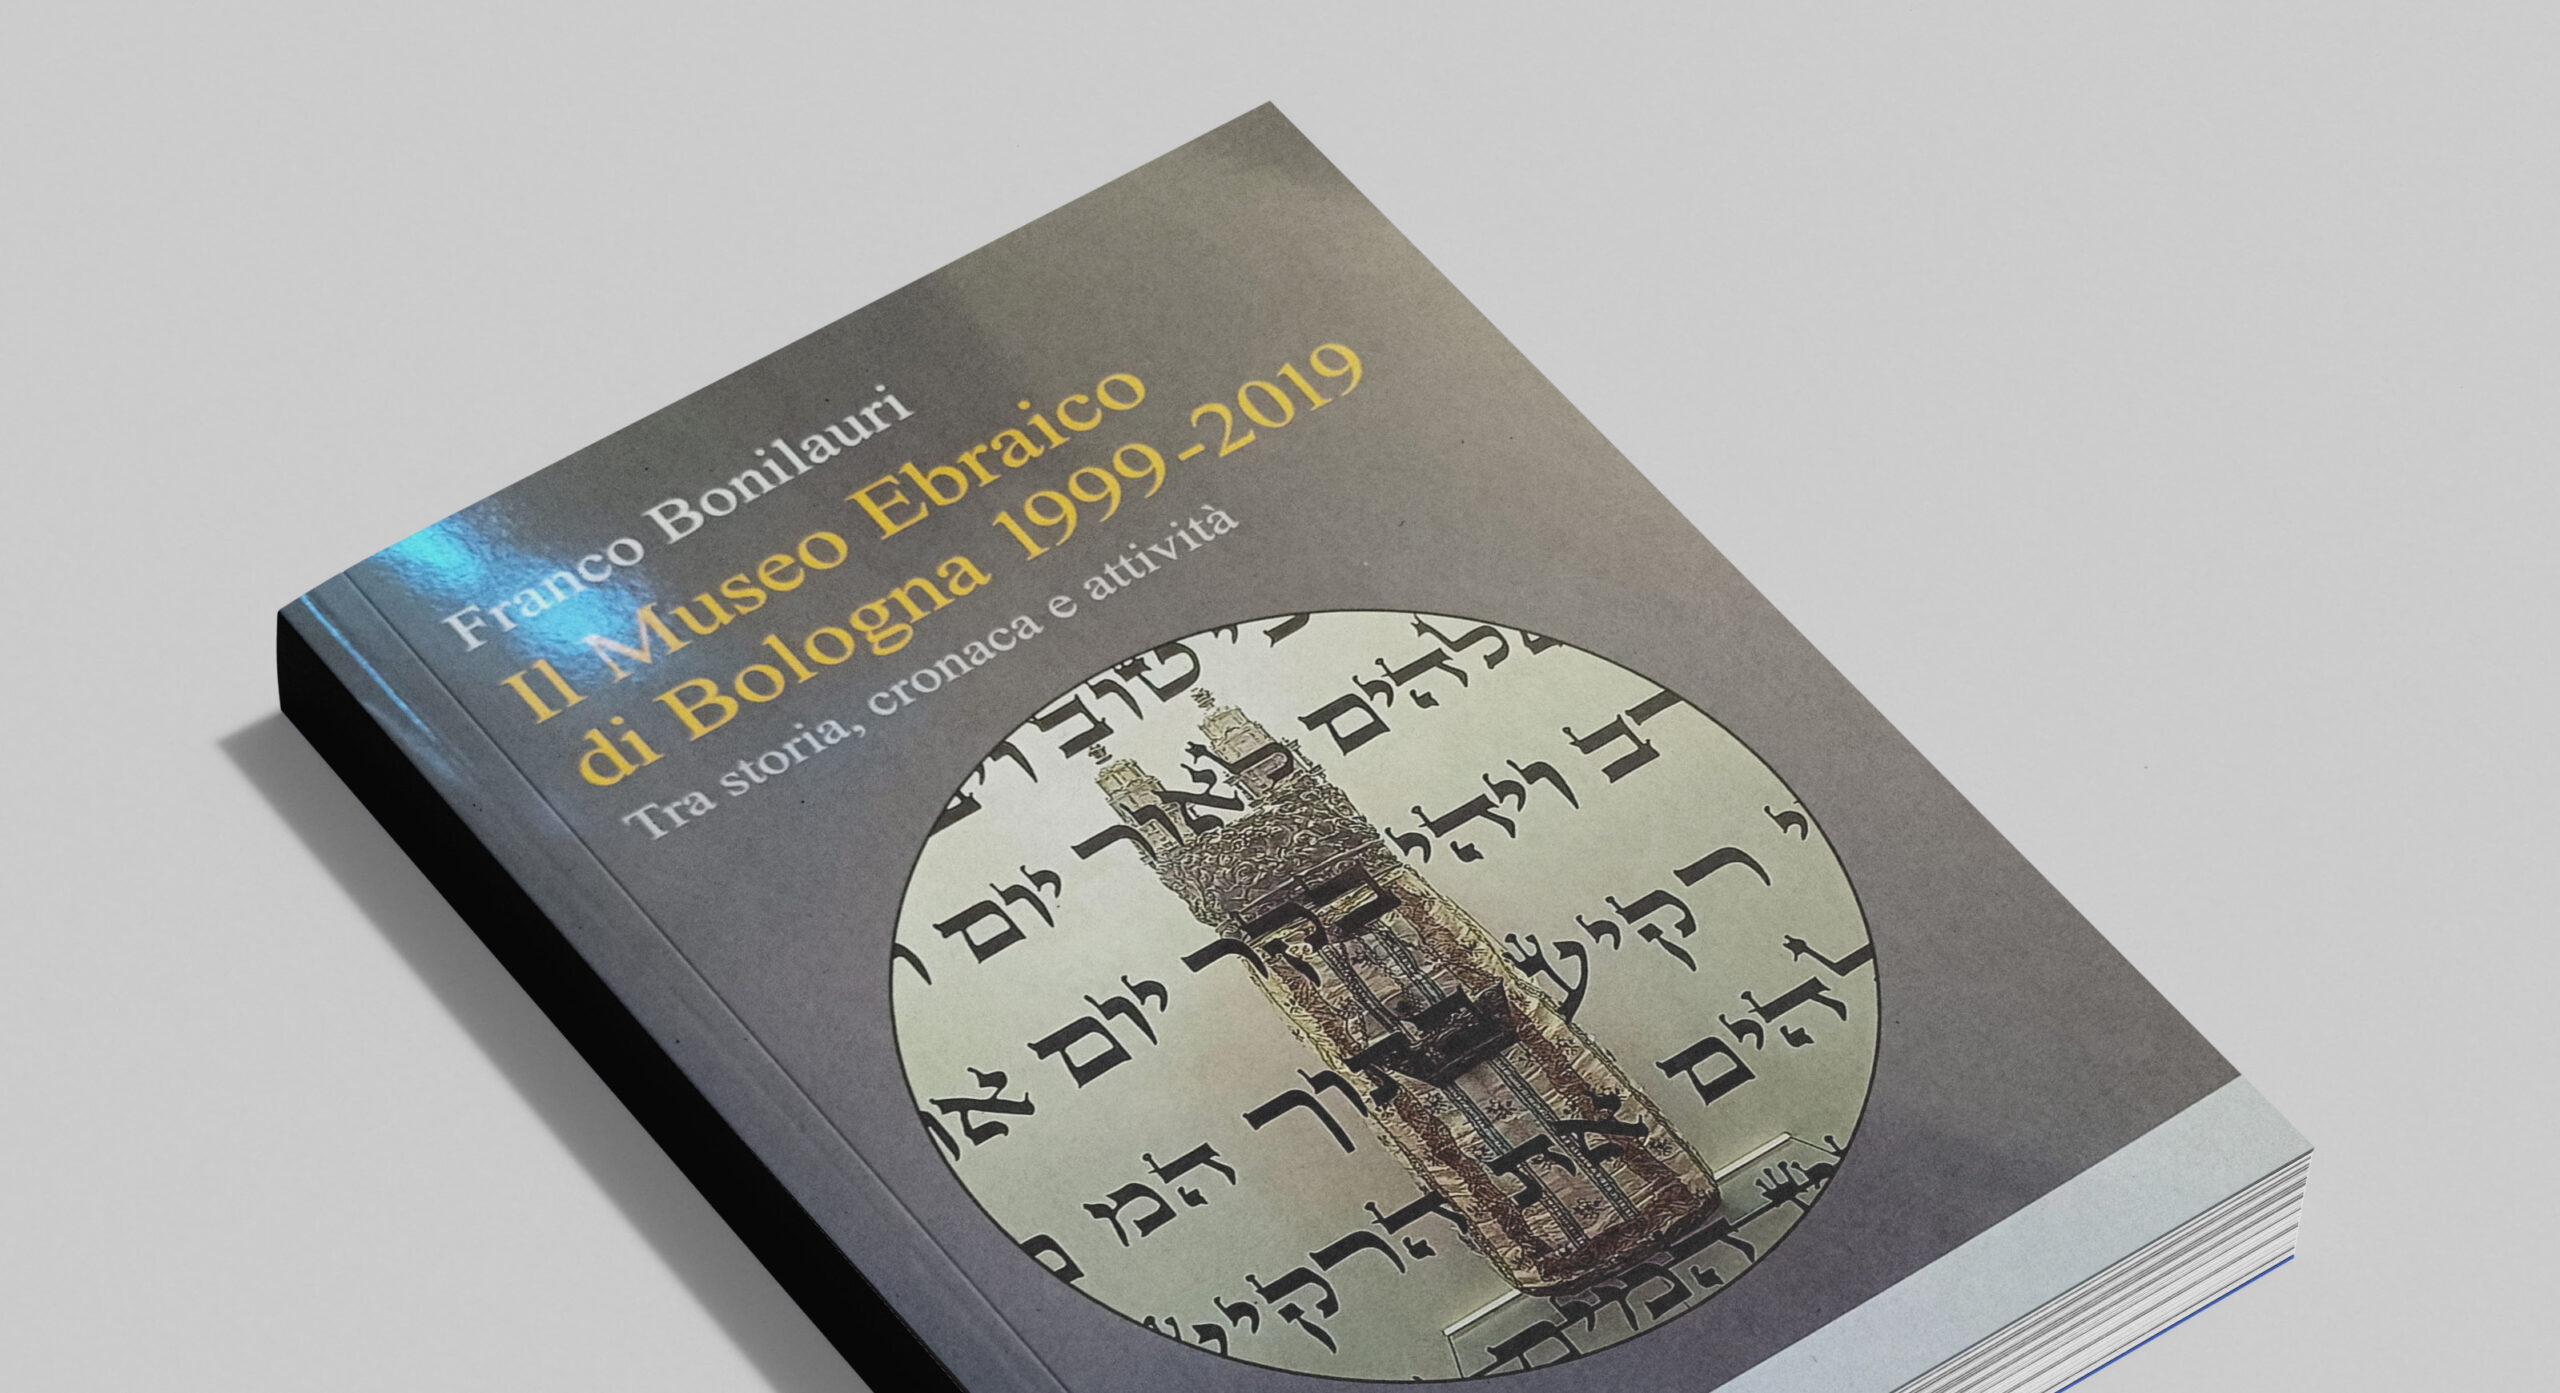 il museo ebraico
di bologna 1999-2019
tra storia, cronaca e attività